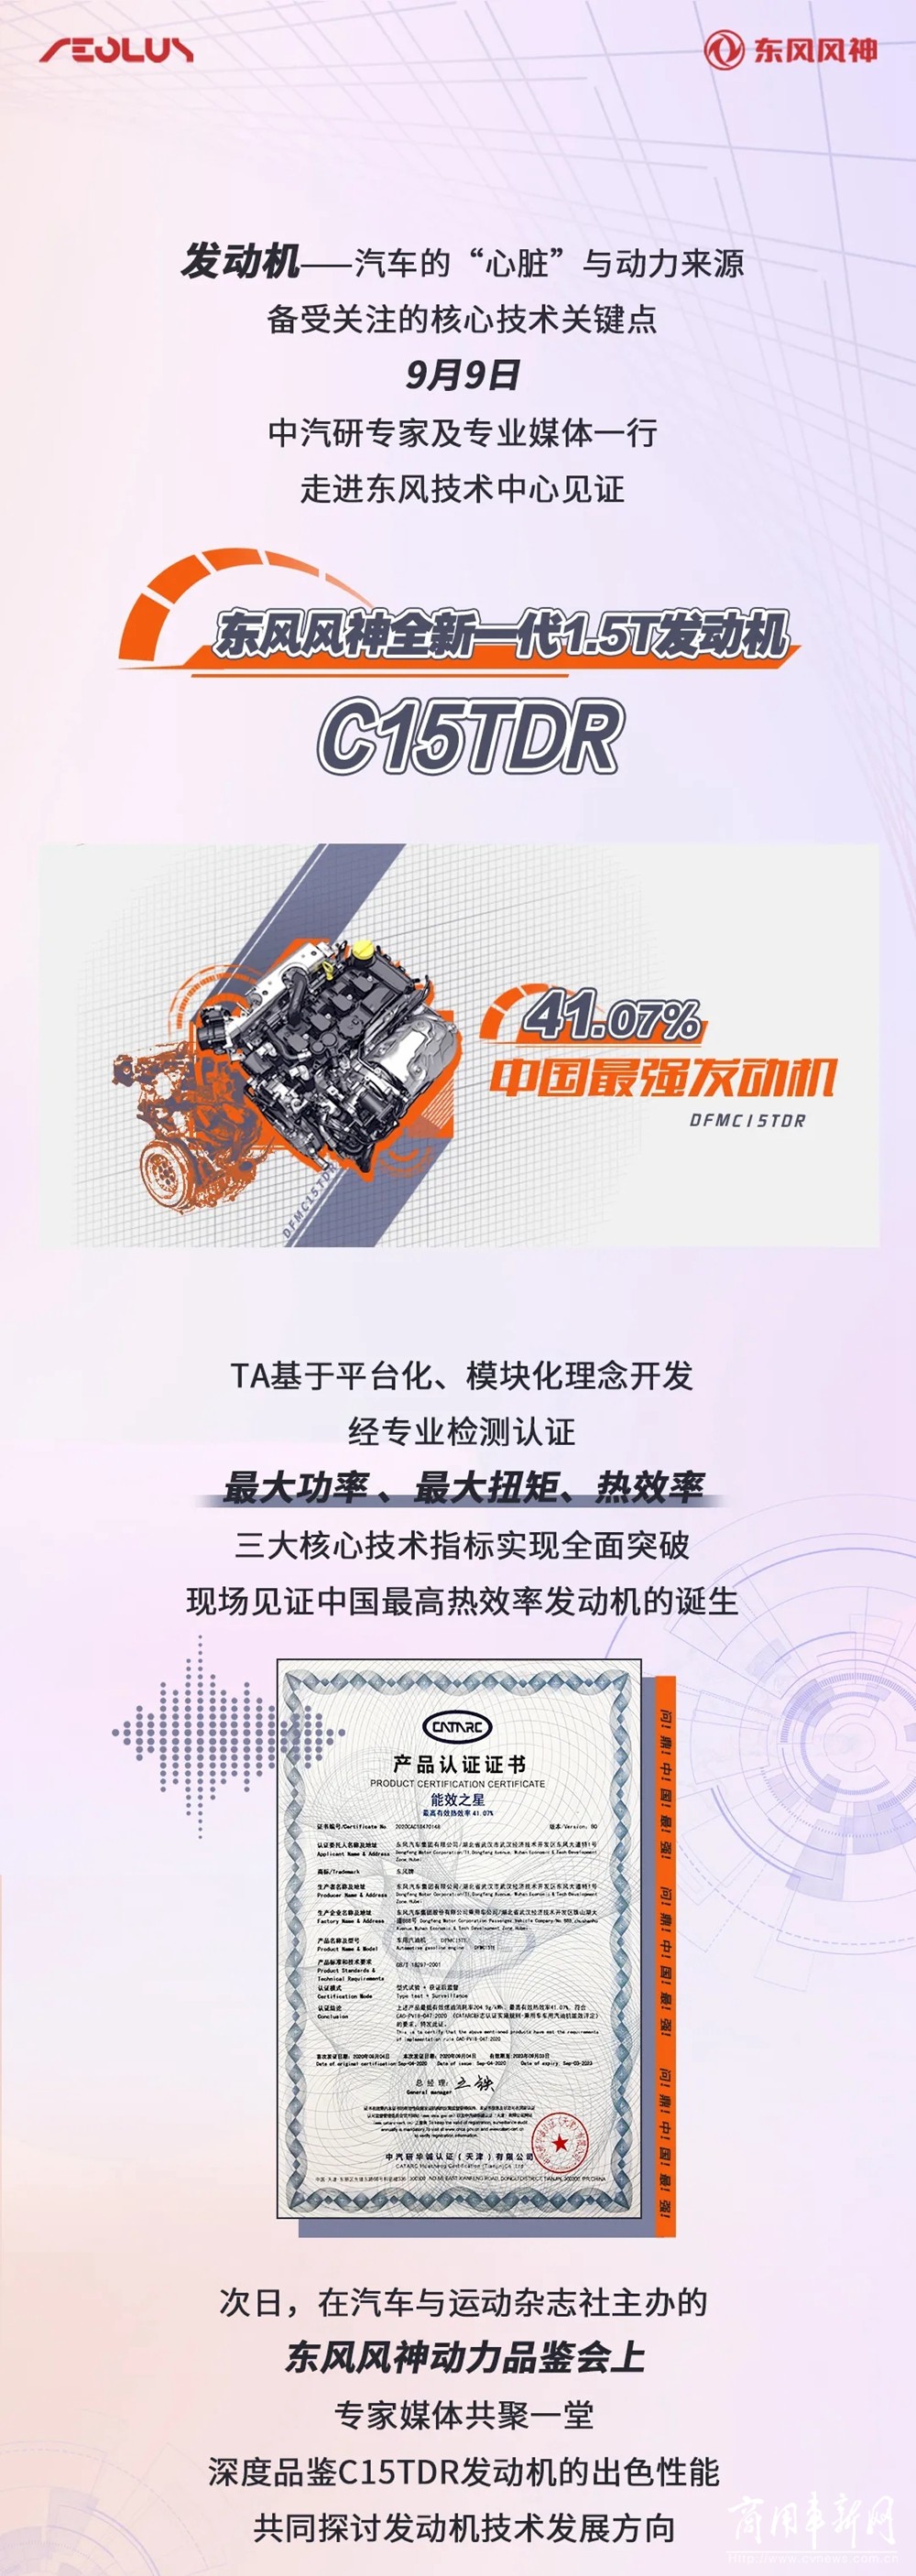 问鼎最强！东风这款发动机刷新中国品牌最高纪录！